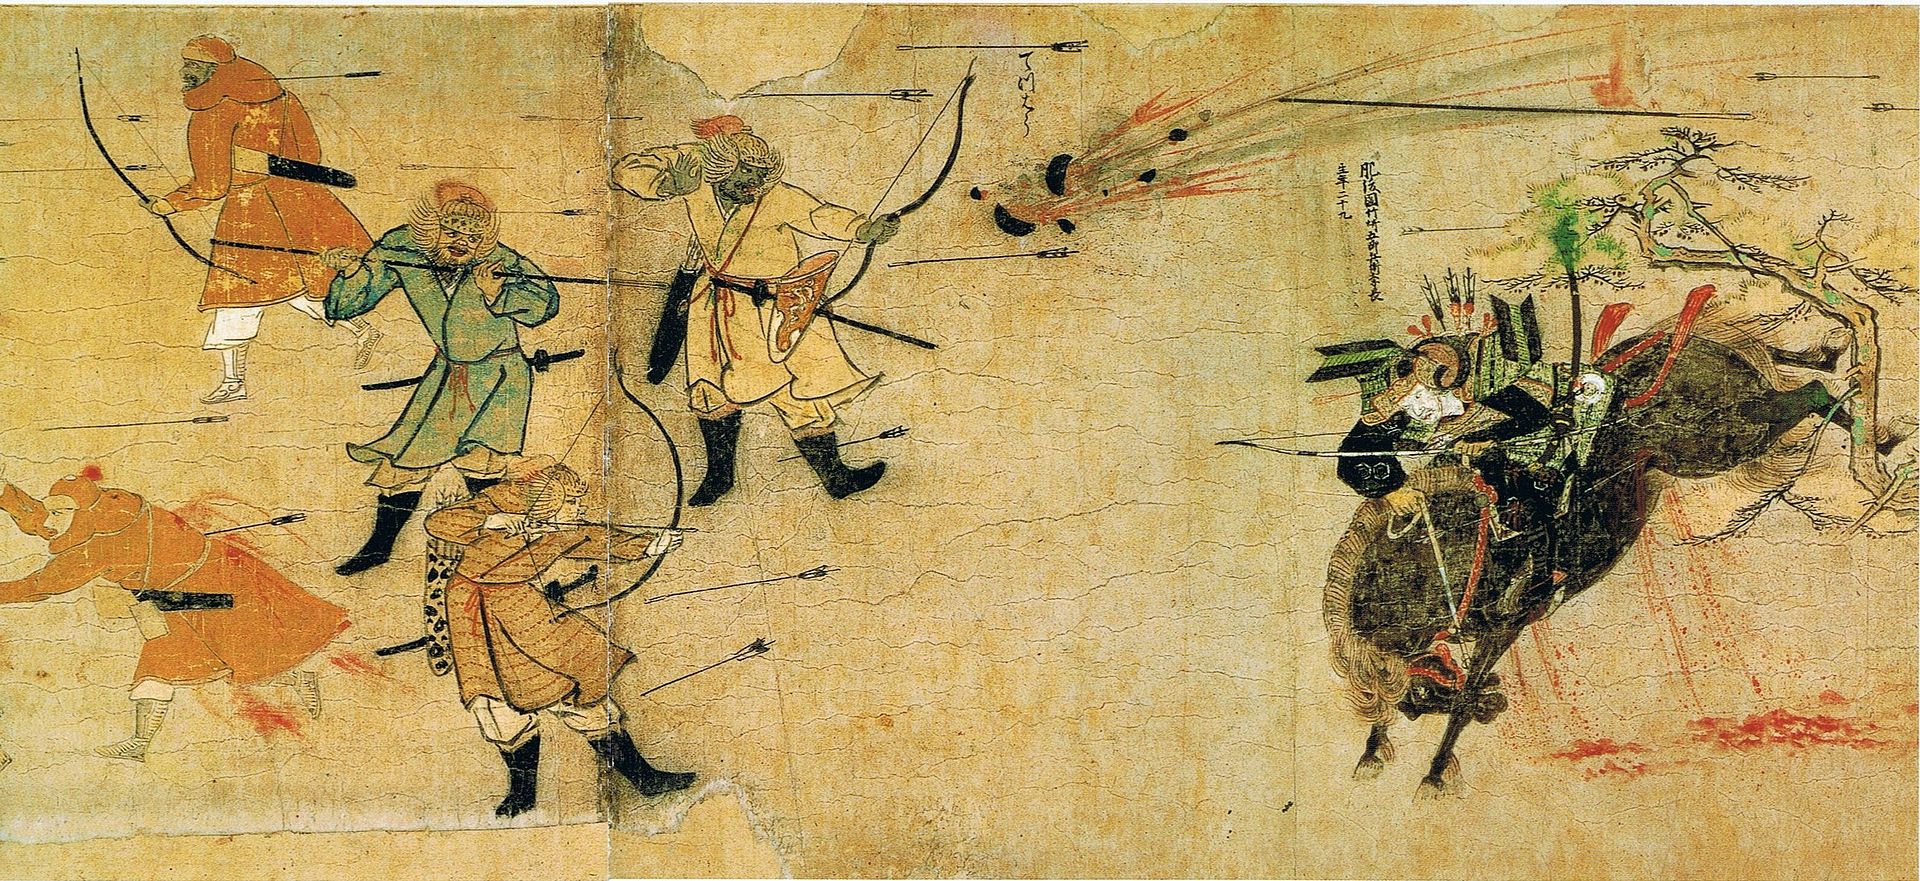 Samurai, facing Mongol arrows and bombs.